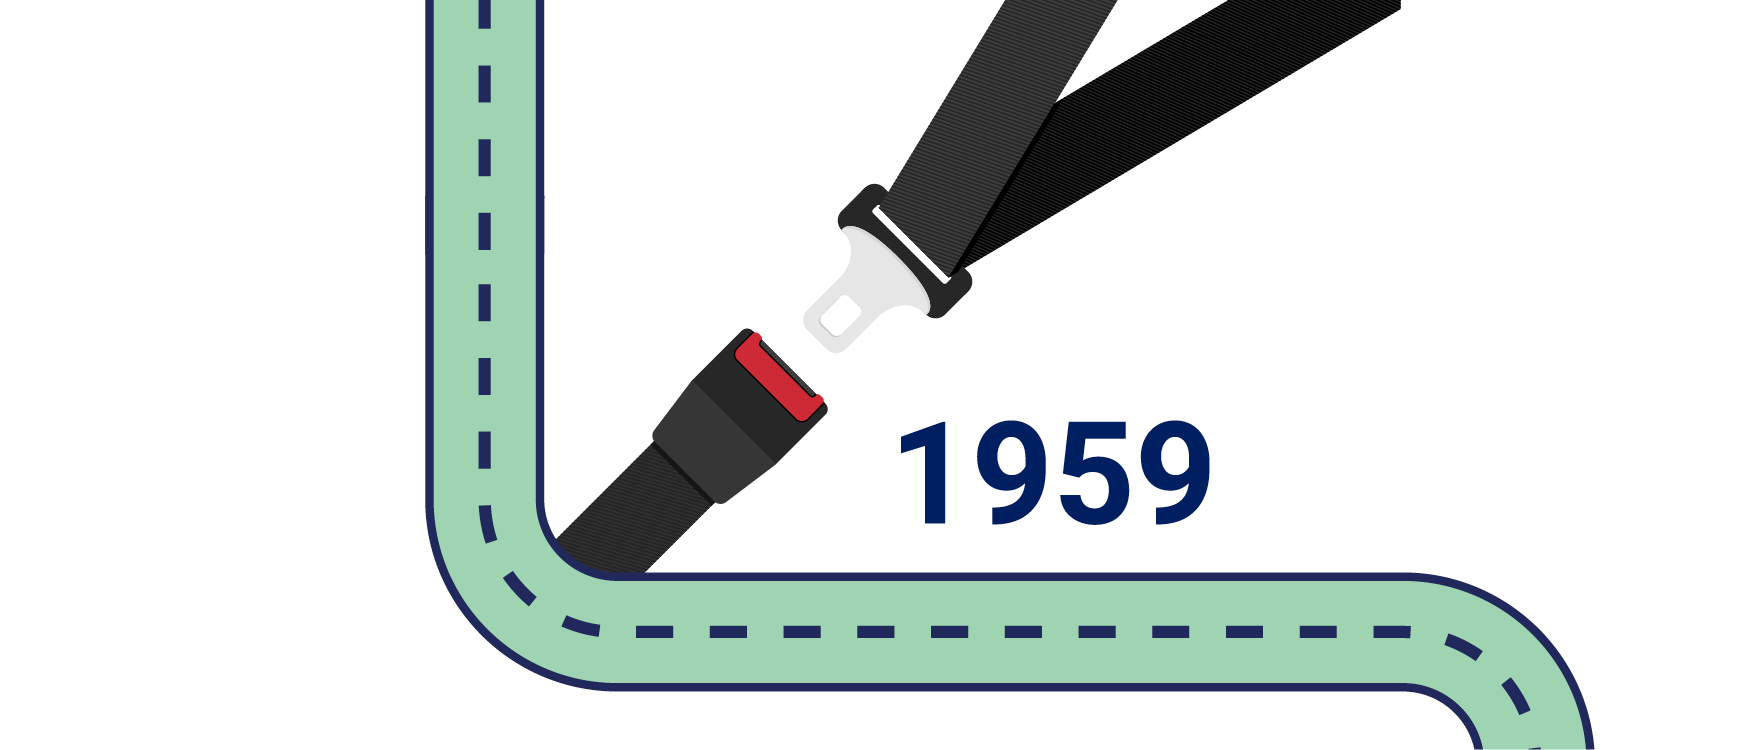 Three-point safety belt invention in 1959